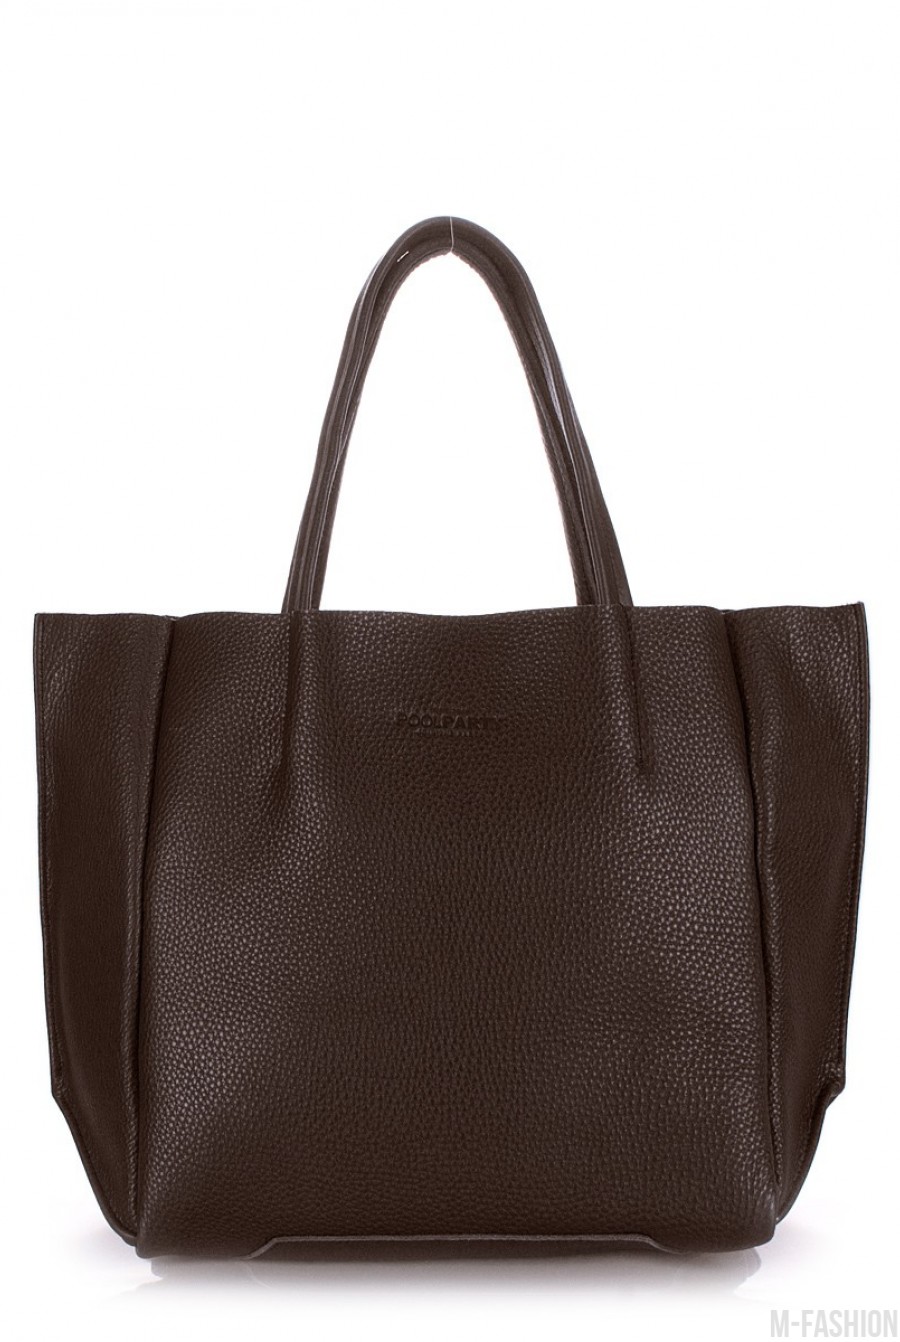 Кожаная коричневая сумка Soho классического дизайна - Фото 1